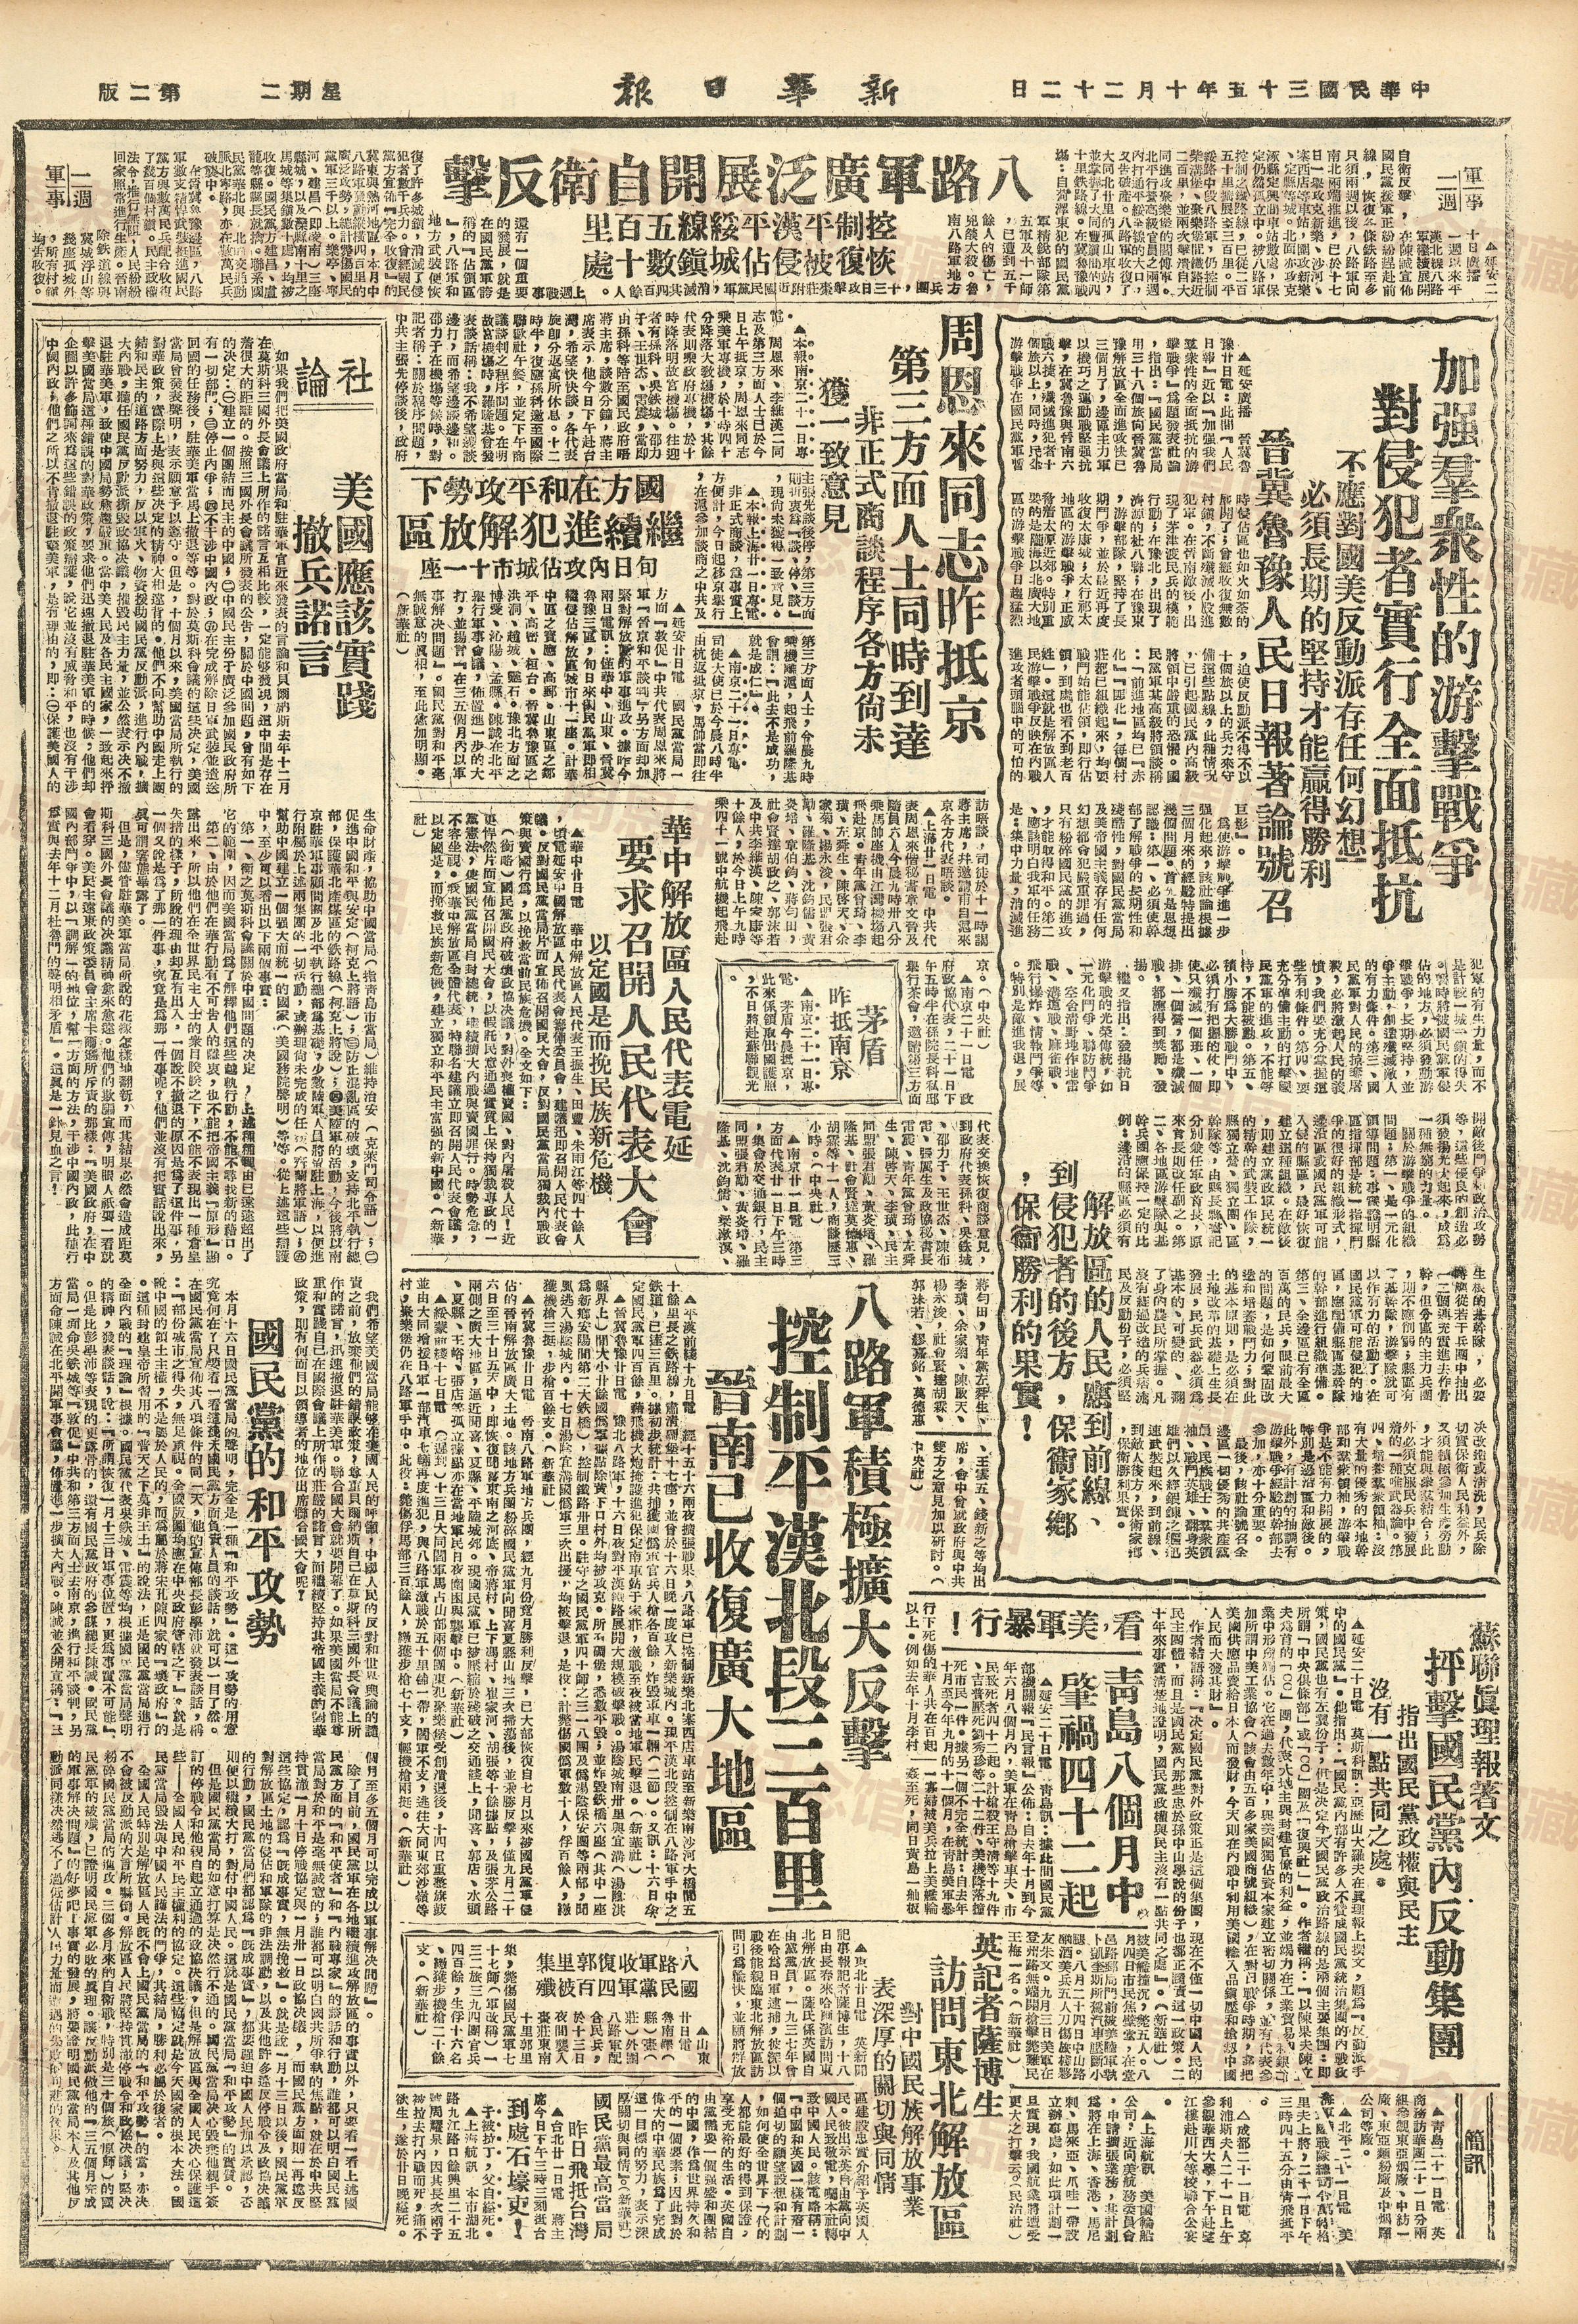 W450 1946年10月22日《新华日报》 三一零五号.jpg